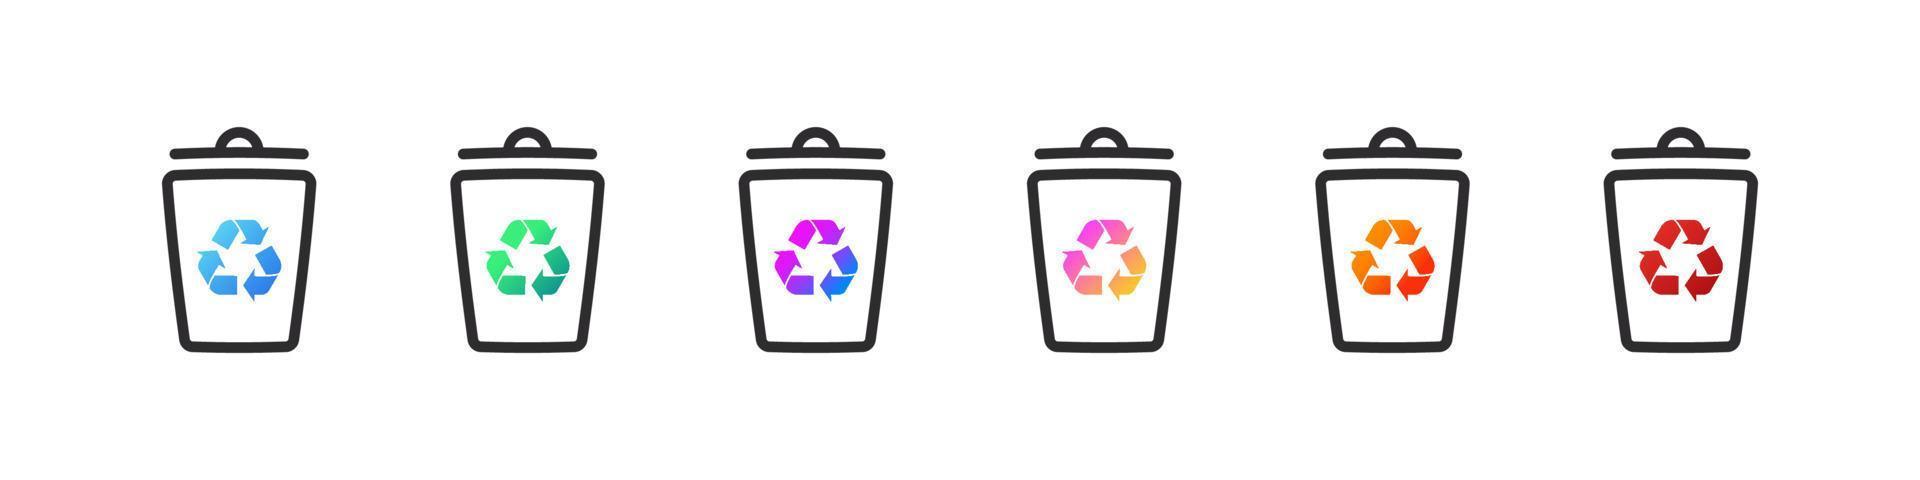 conjunto de papeleras de reciclaje. iconos de botes de basura para diferentes tipos de residuos. ilustración vectorial vector